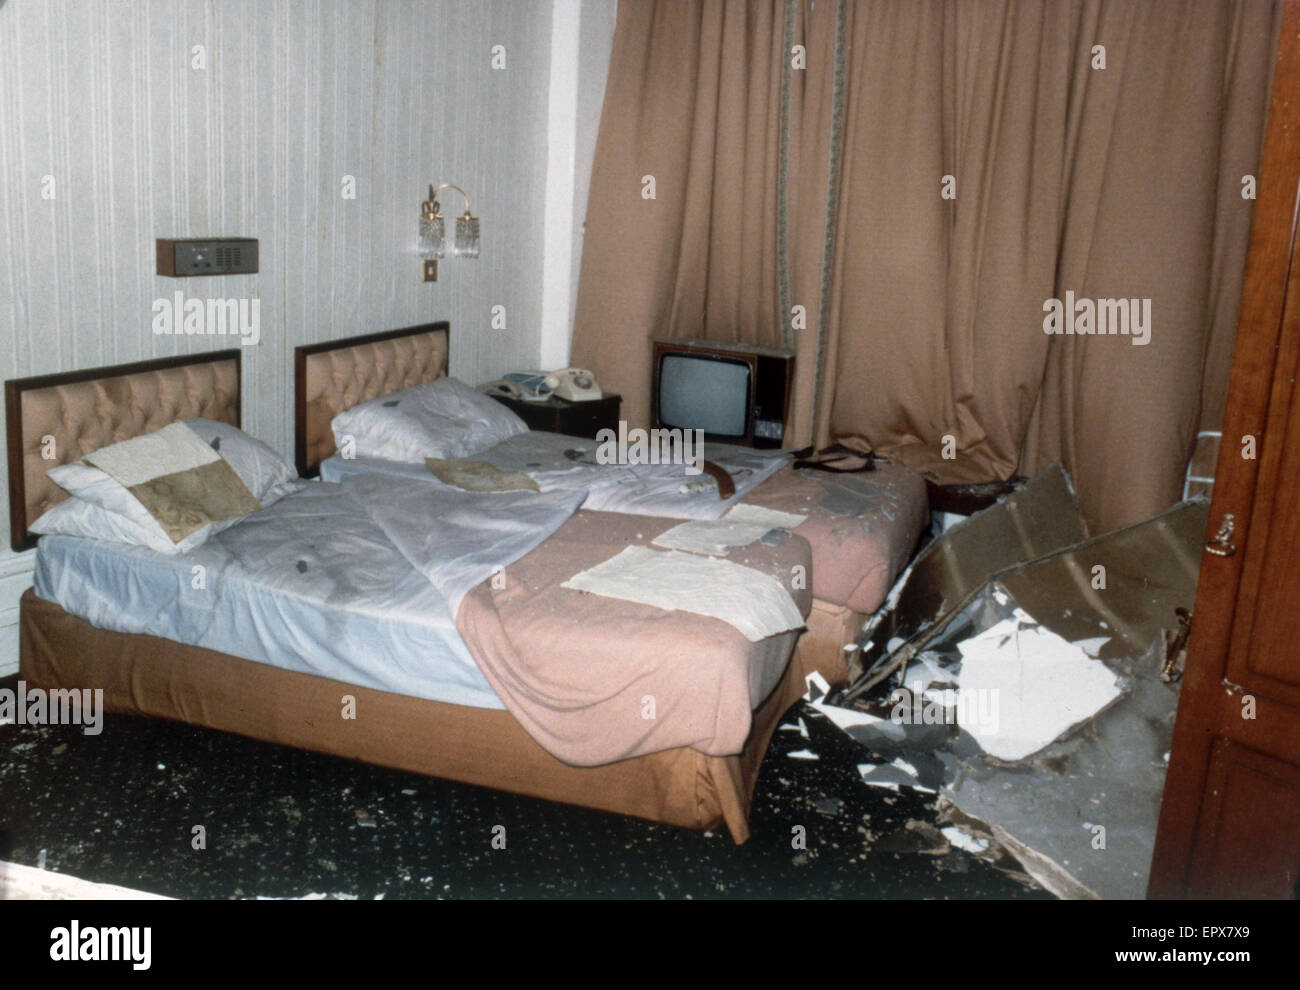 Innenansicht mit Schäden an das Schlafzimmer von Margaret und Dennis Thatcher im Grand Hotel in Brighton ein IRA nach besetzt Bombenexplosion, wo sie während der Woche Parteitag der konservativen aufhielten.  Unter den verletzten war der Handel und Stockfoto